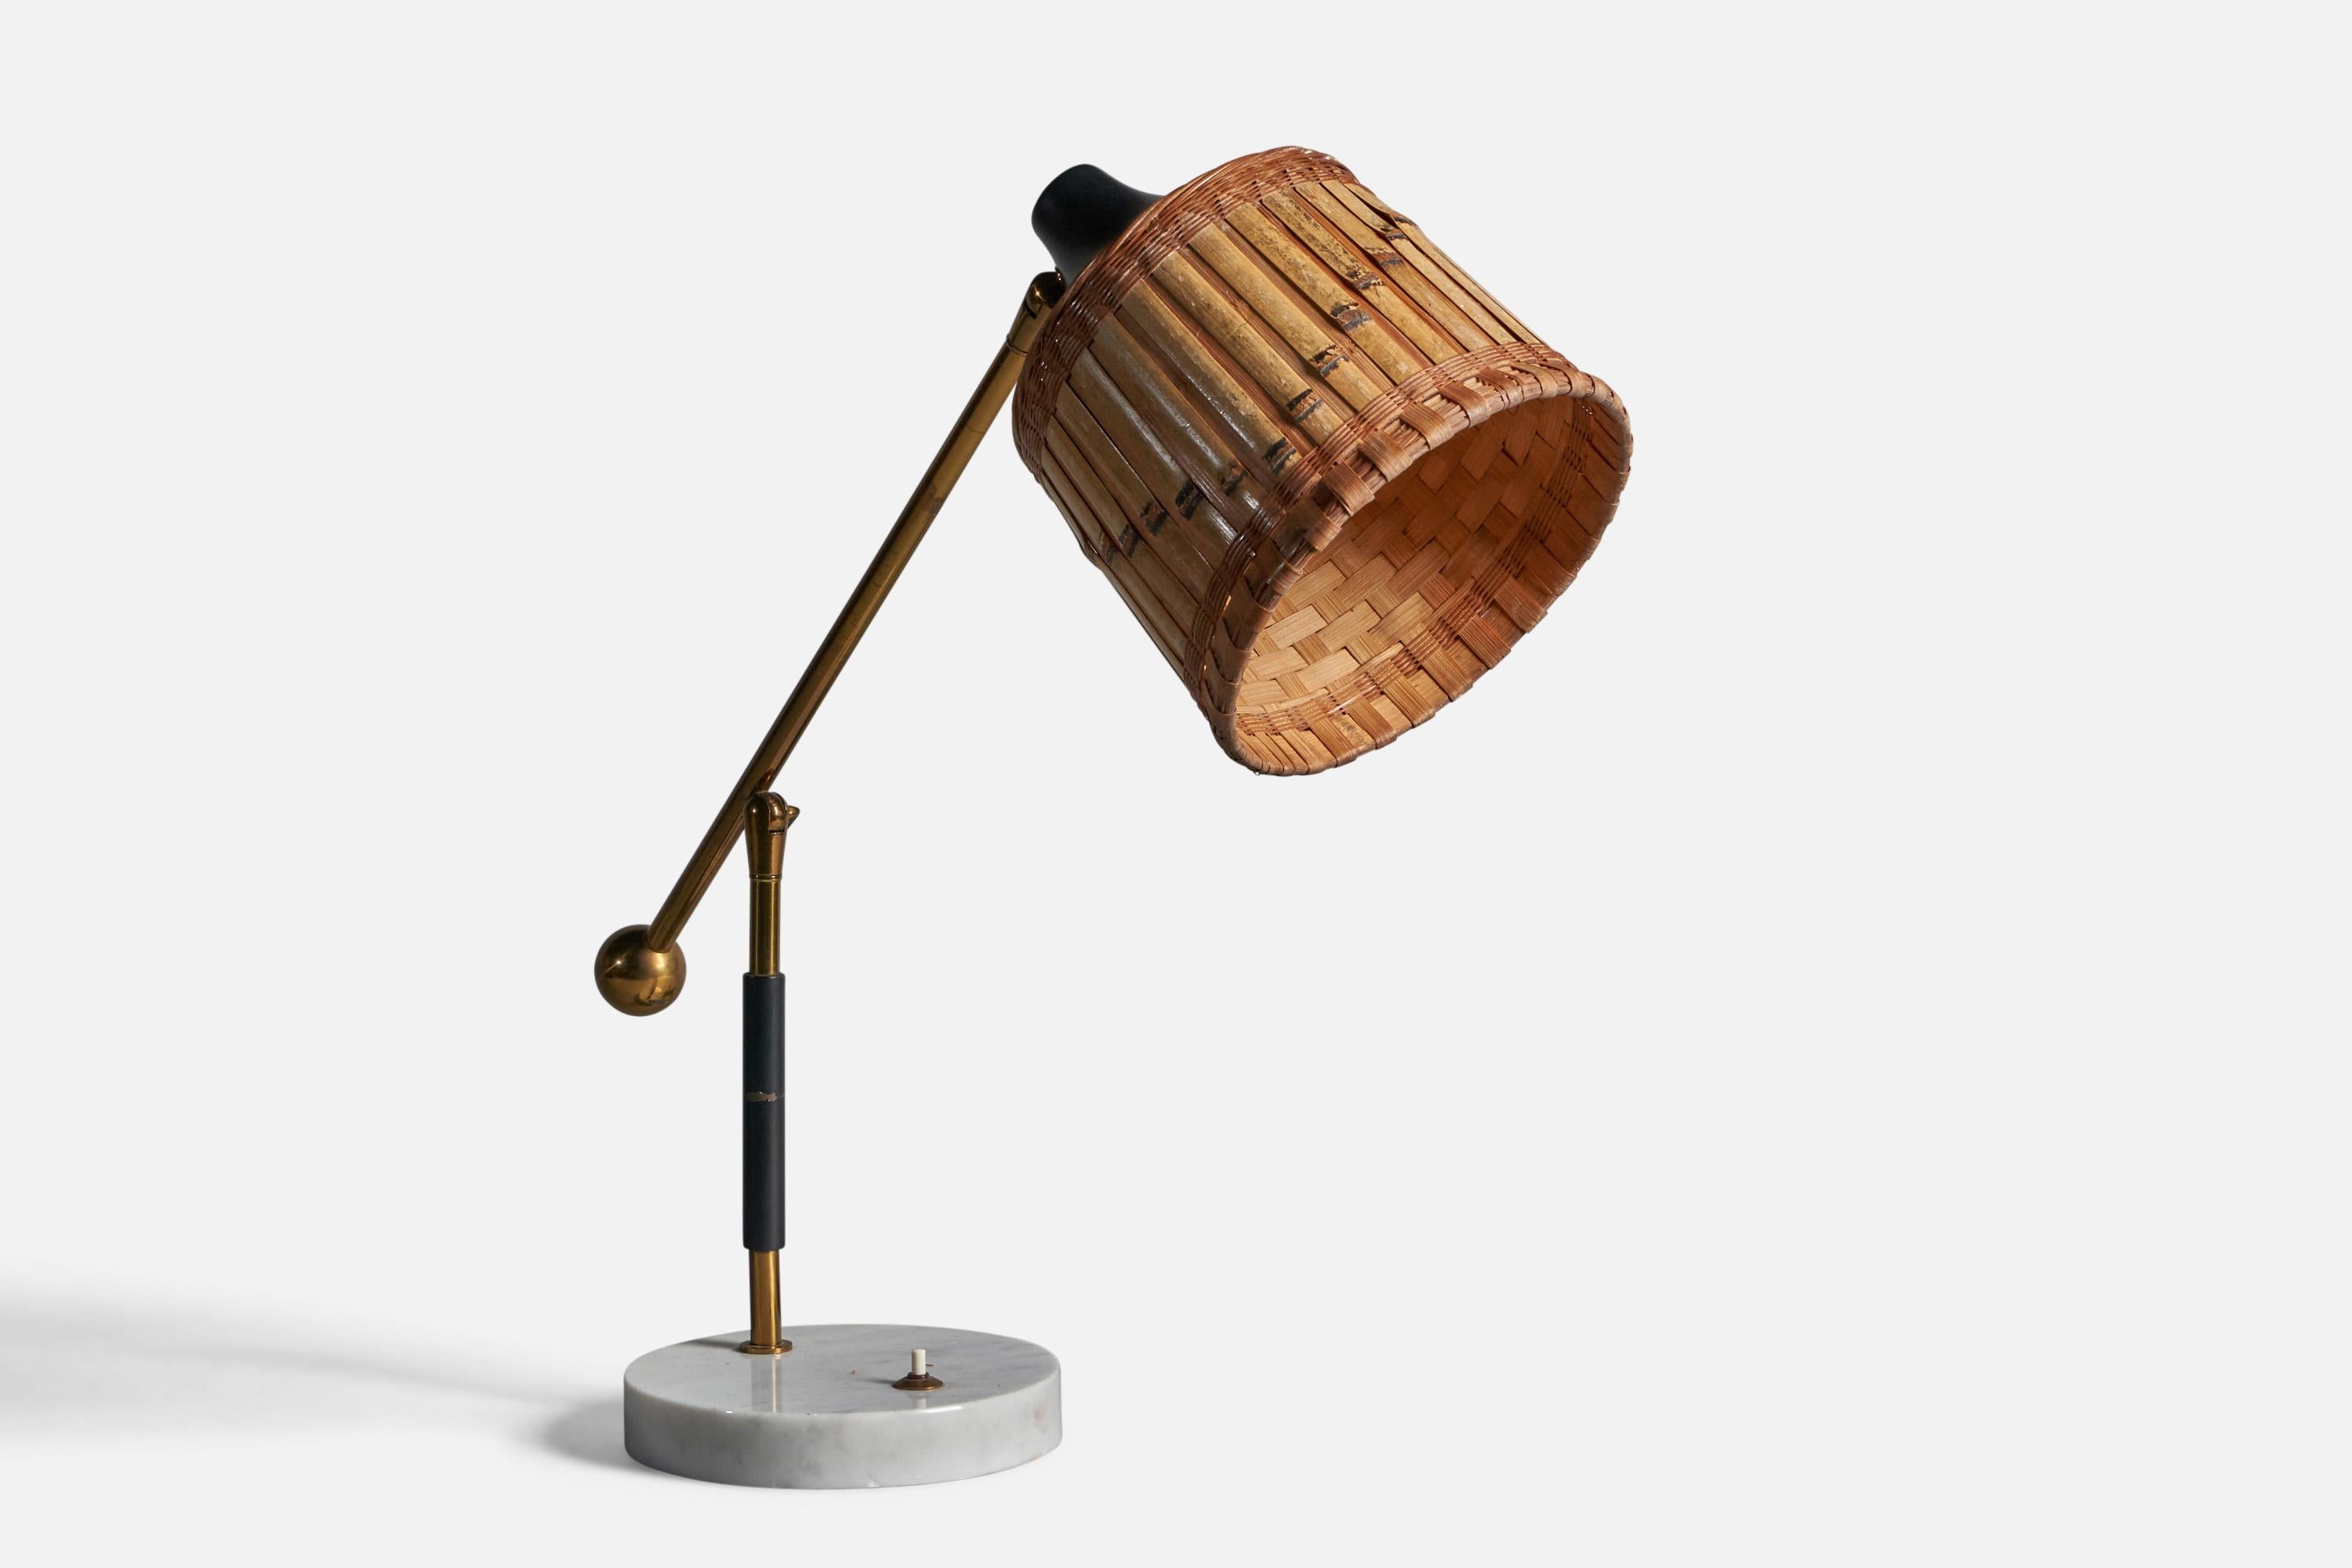 Eine verstellbare Tischlampe aus Messing, Metall, Marmor und Rattan, entworfen und hergestellt in Italien, 1950er Jahre

Gesamtabmessungen (Zoll): 21,5